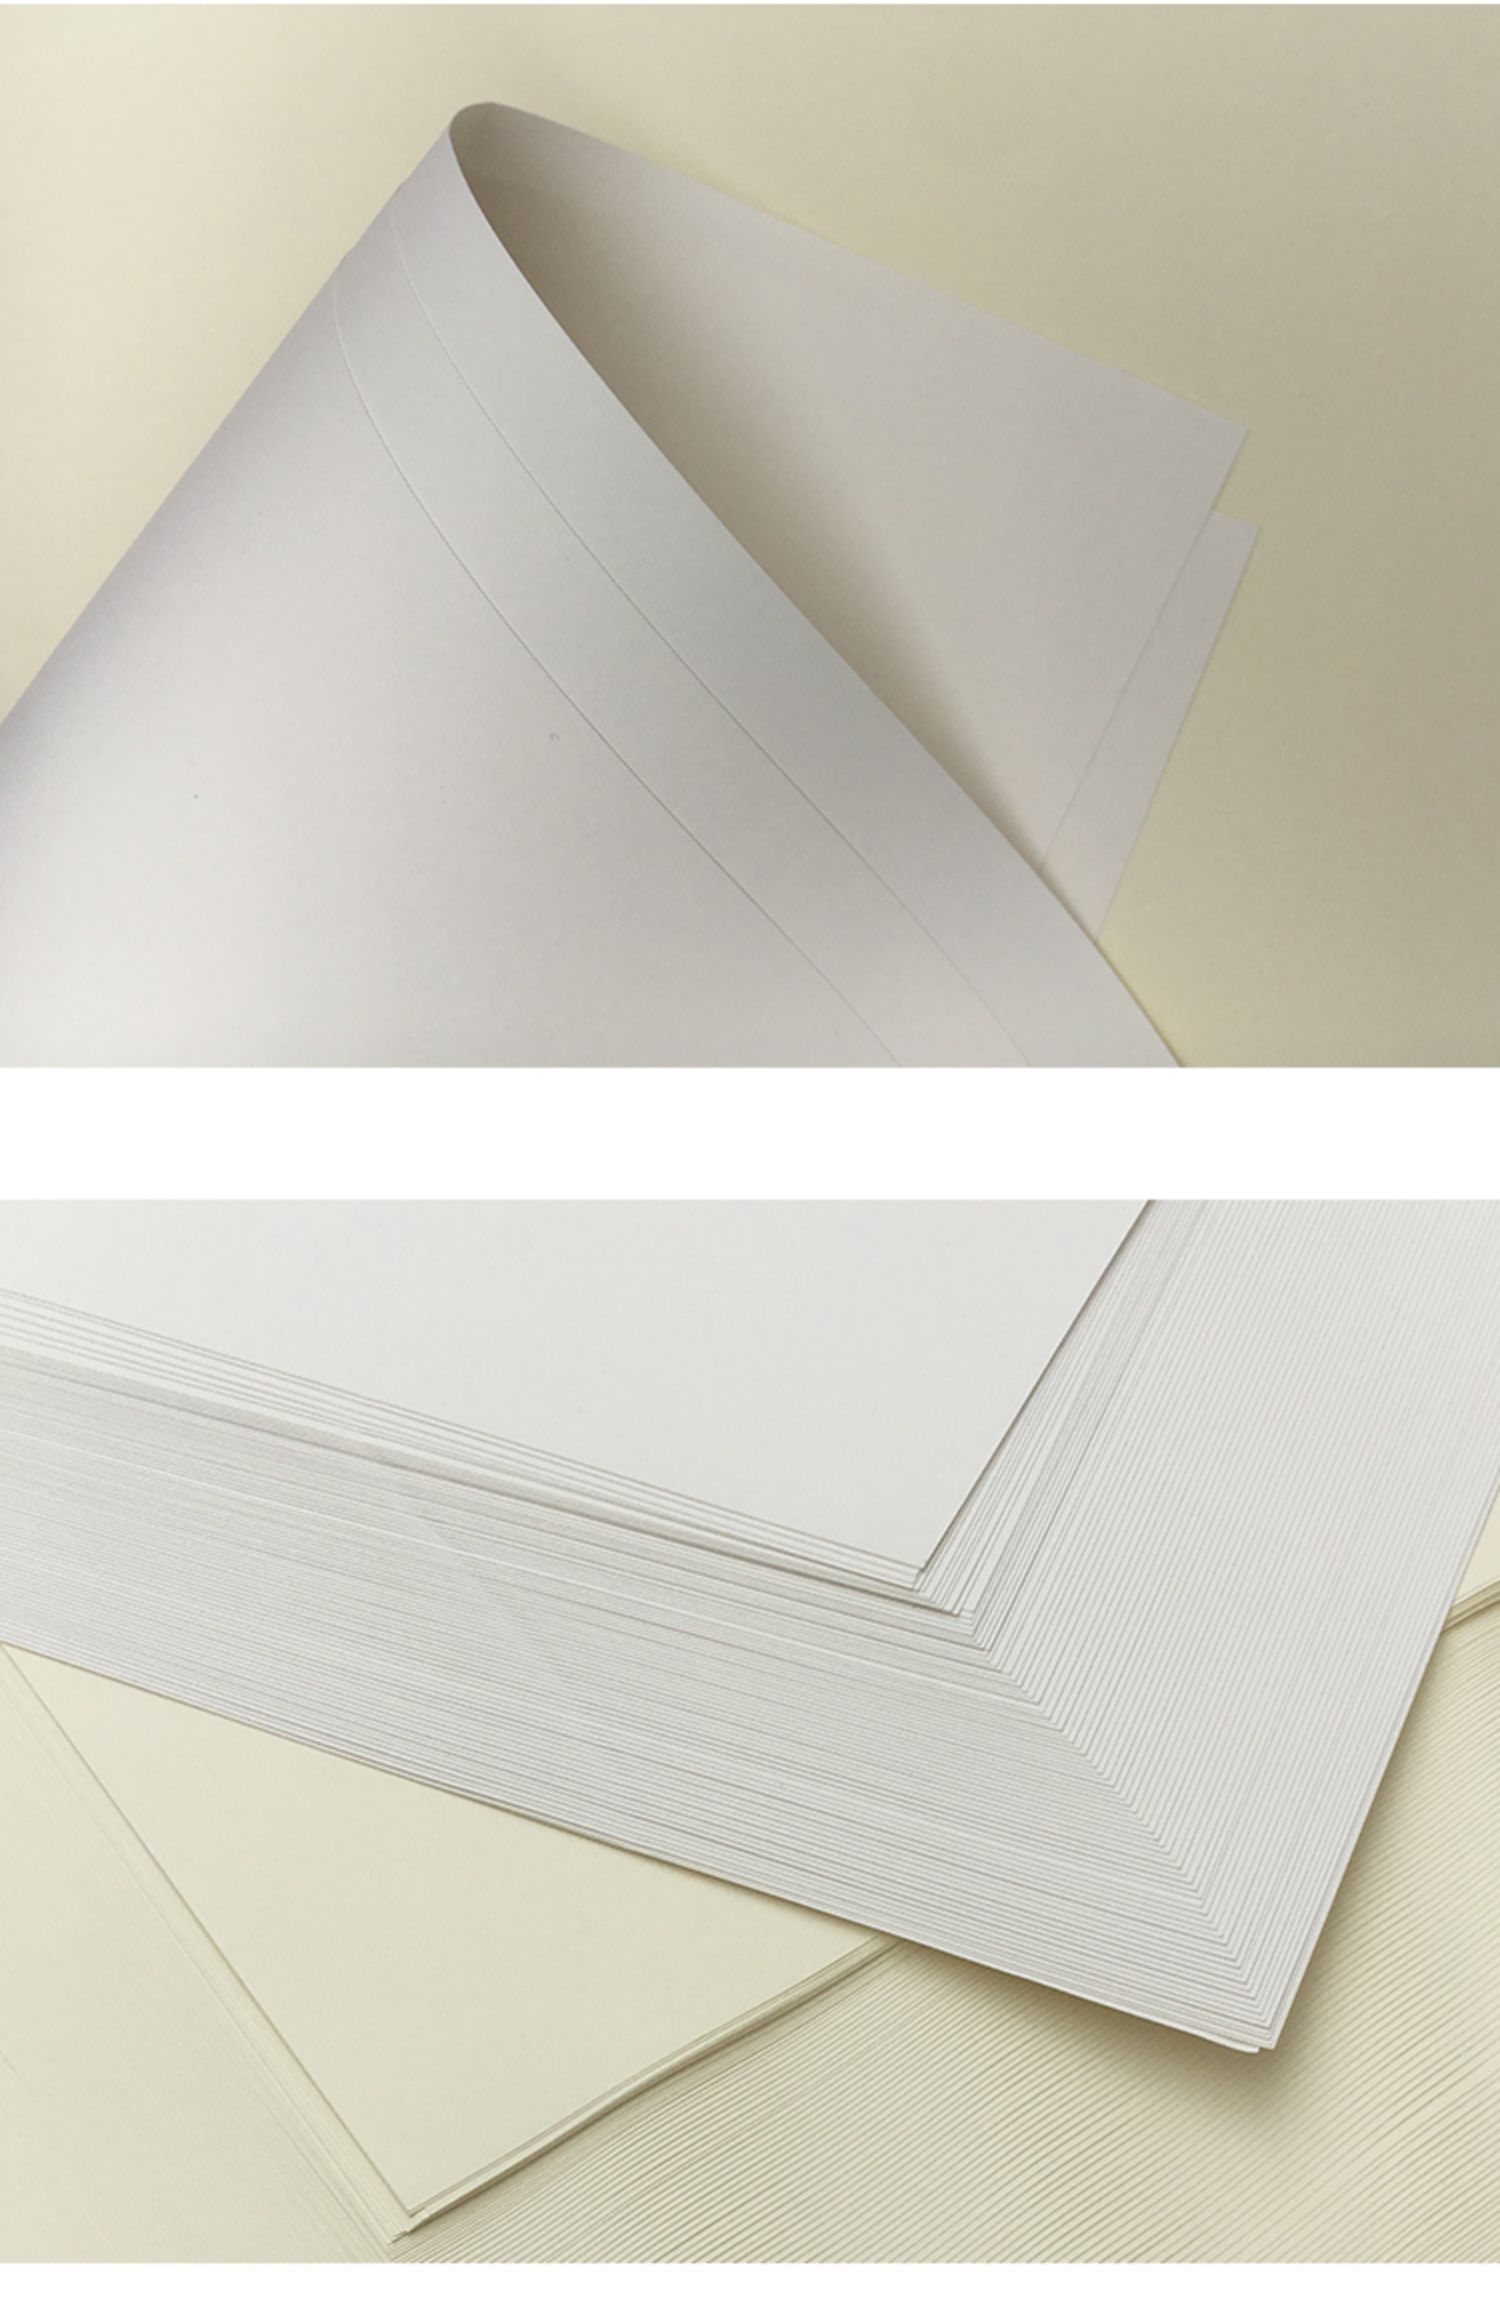 双胶纸道林纸a4a5b5护眼胶版纸米黄米色160g80g140g印刷打印纸a3asns